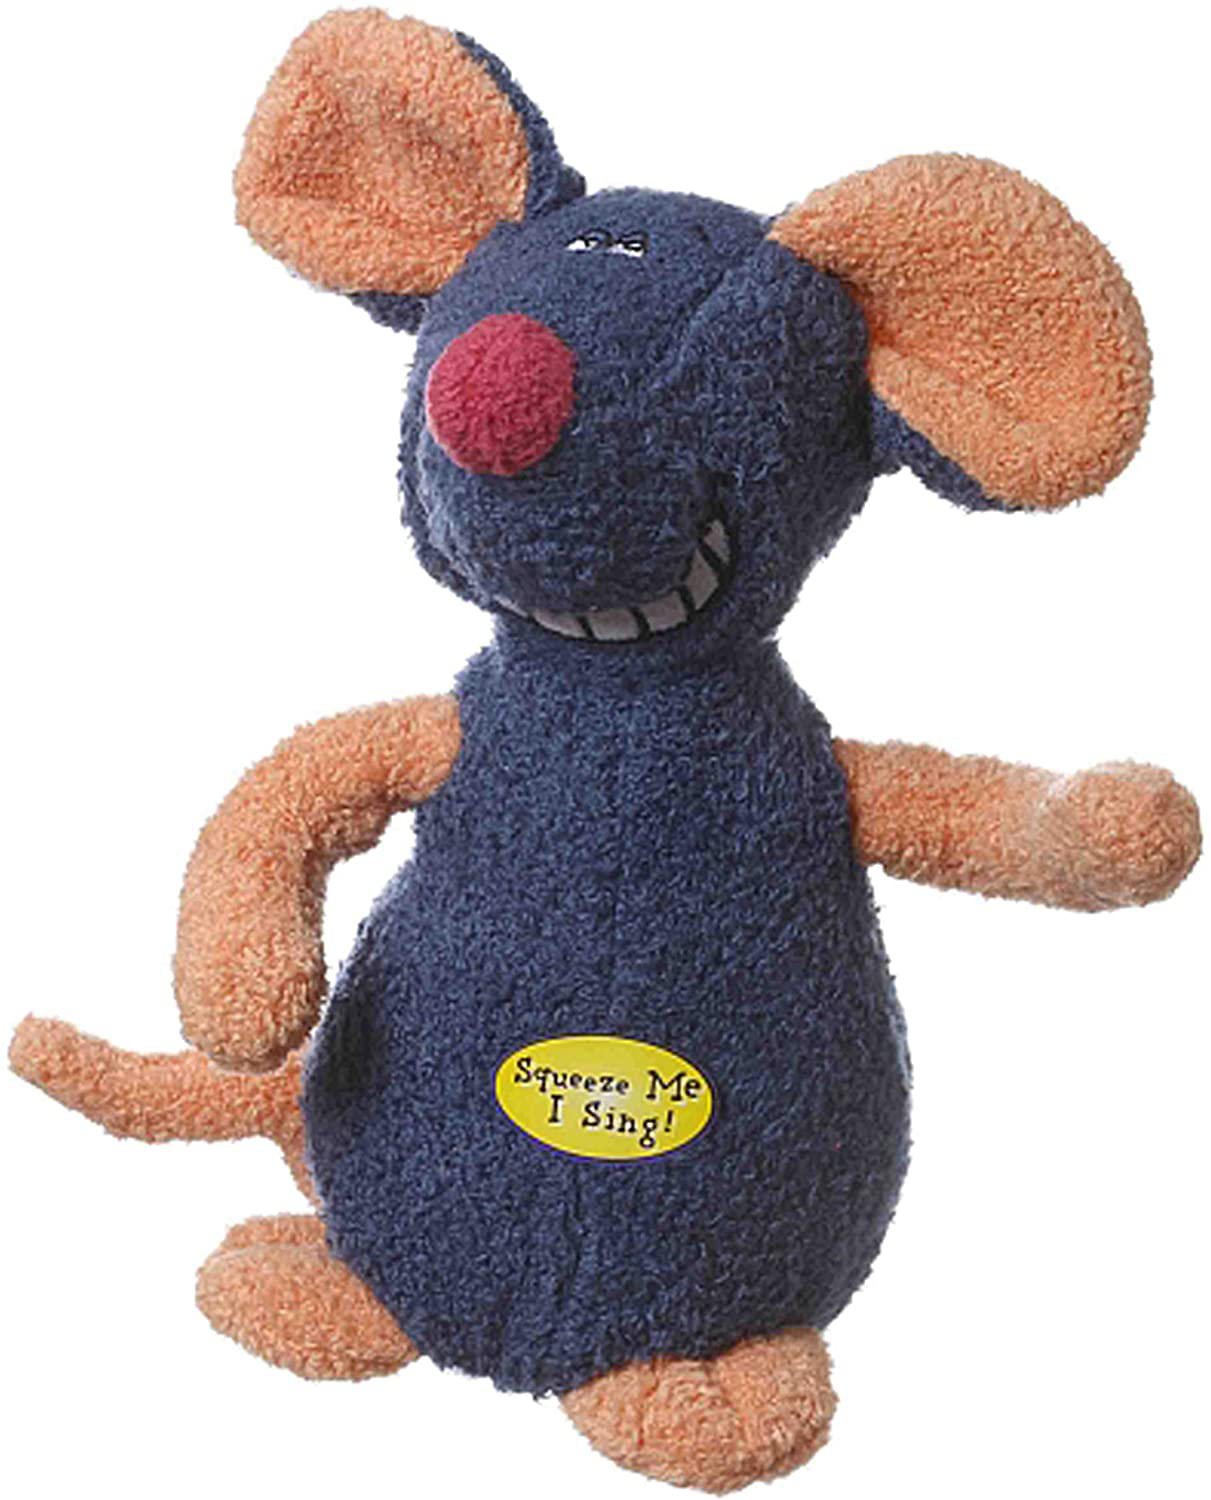 Multipet Deedle Dude 8-Inch Singing Mouse Plush Dog Toy, Blue